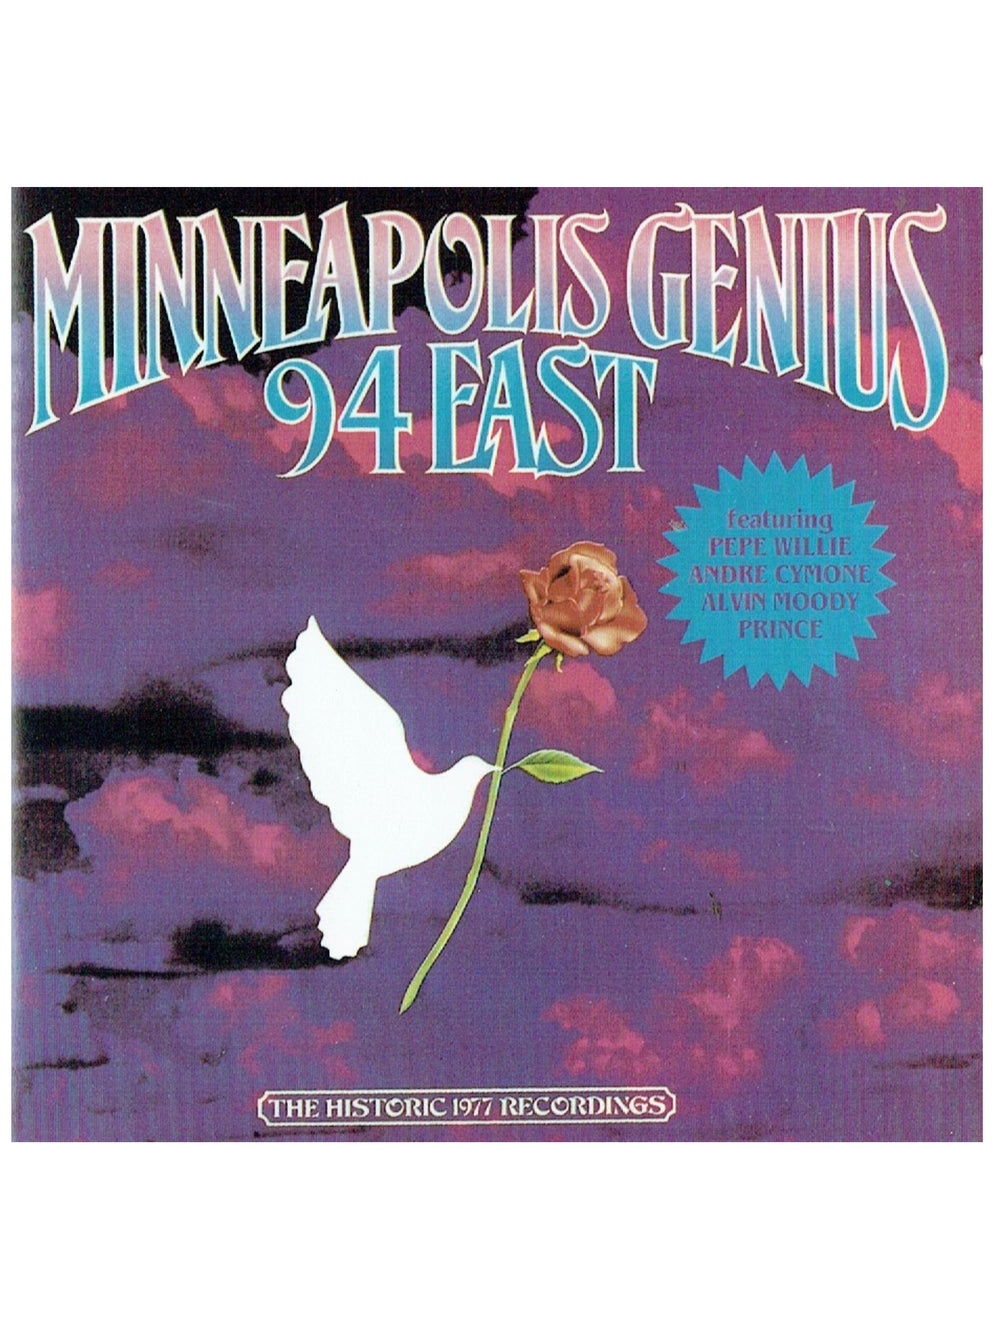 Prince Minneapolis Genius CD Album 94 East